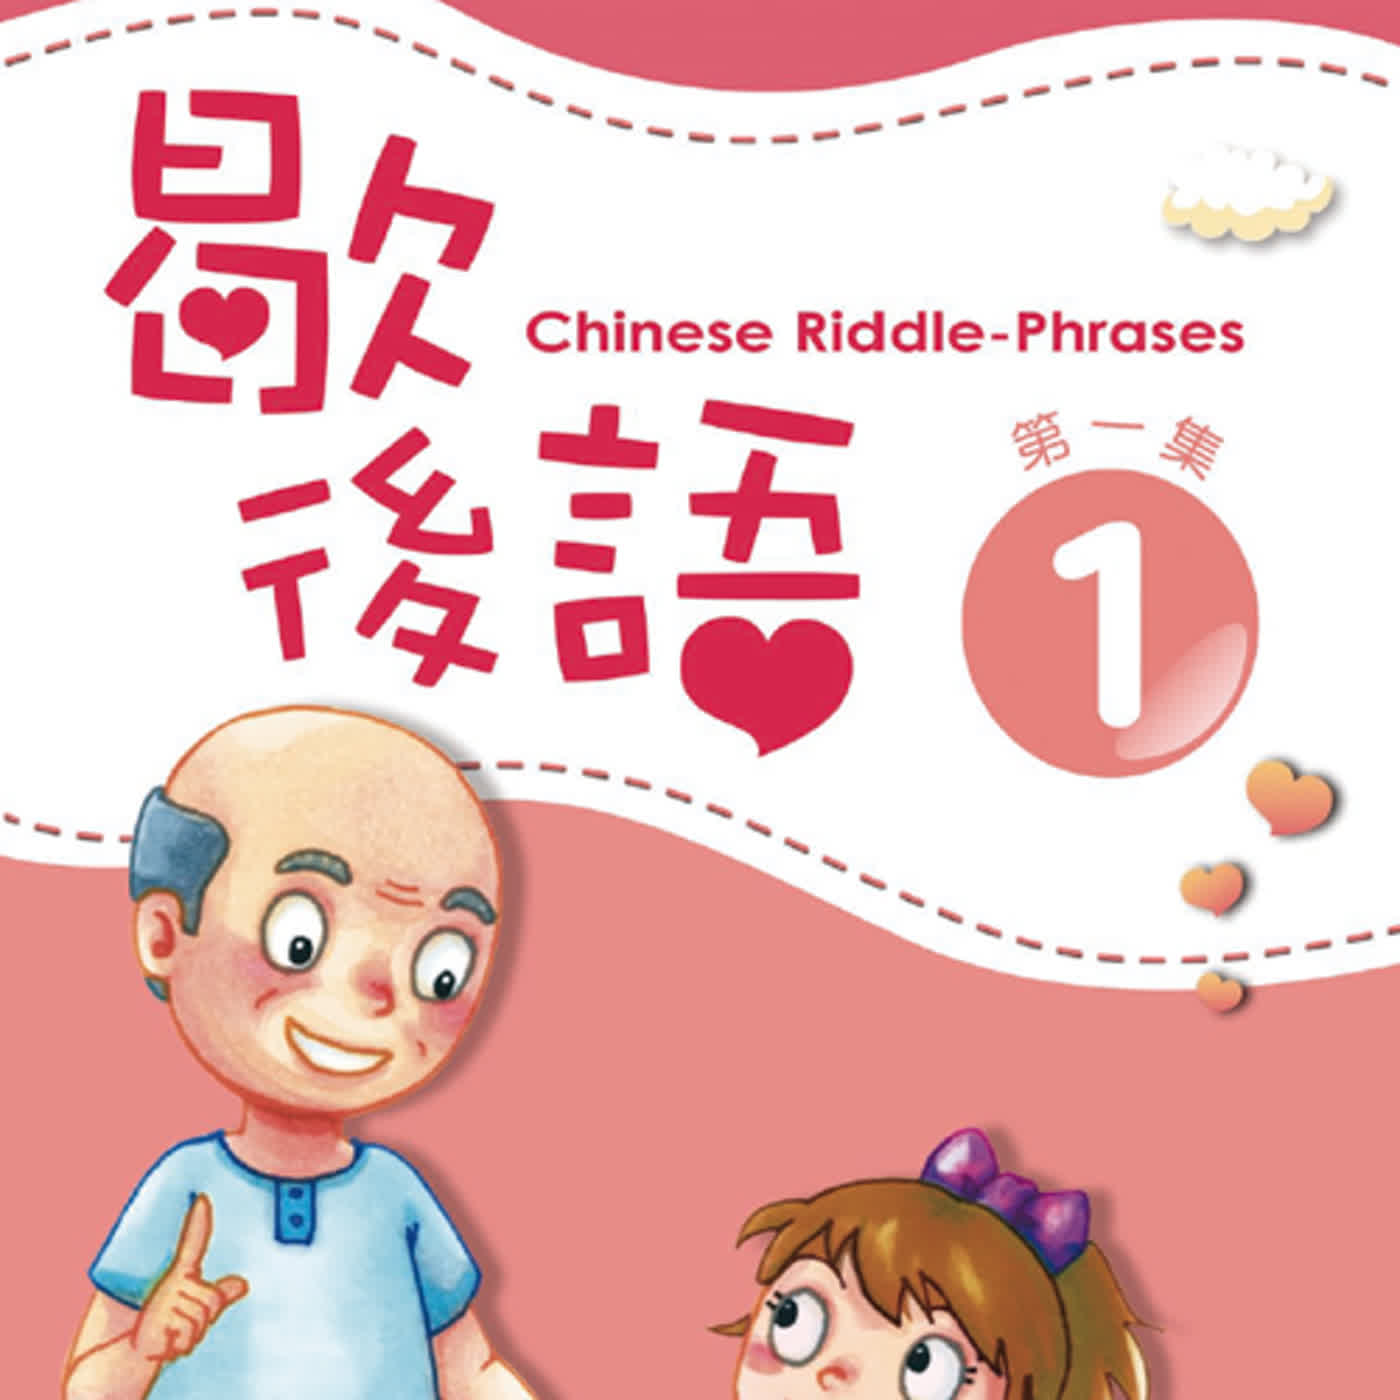 歇後語1 L14  Chinese Riddle-Phrases L14